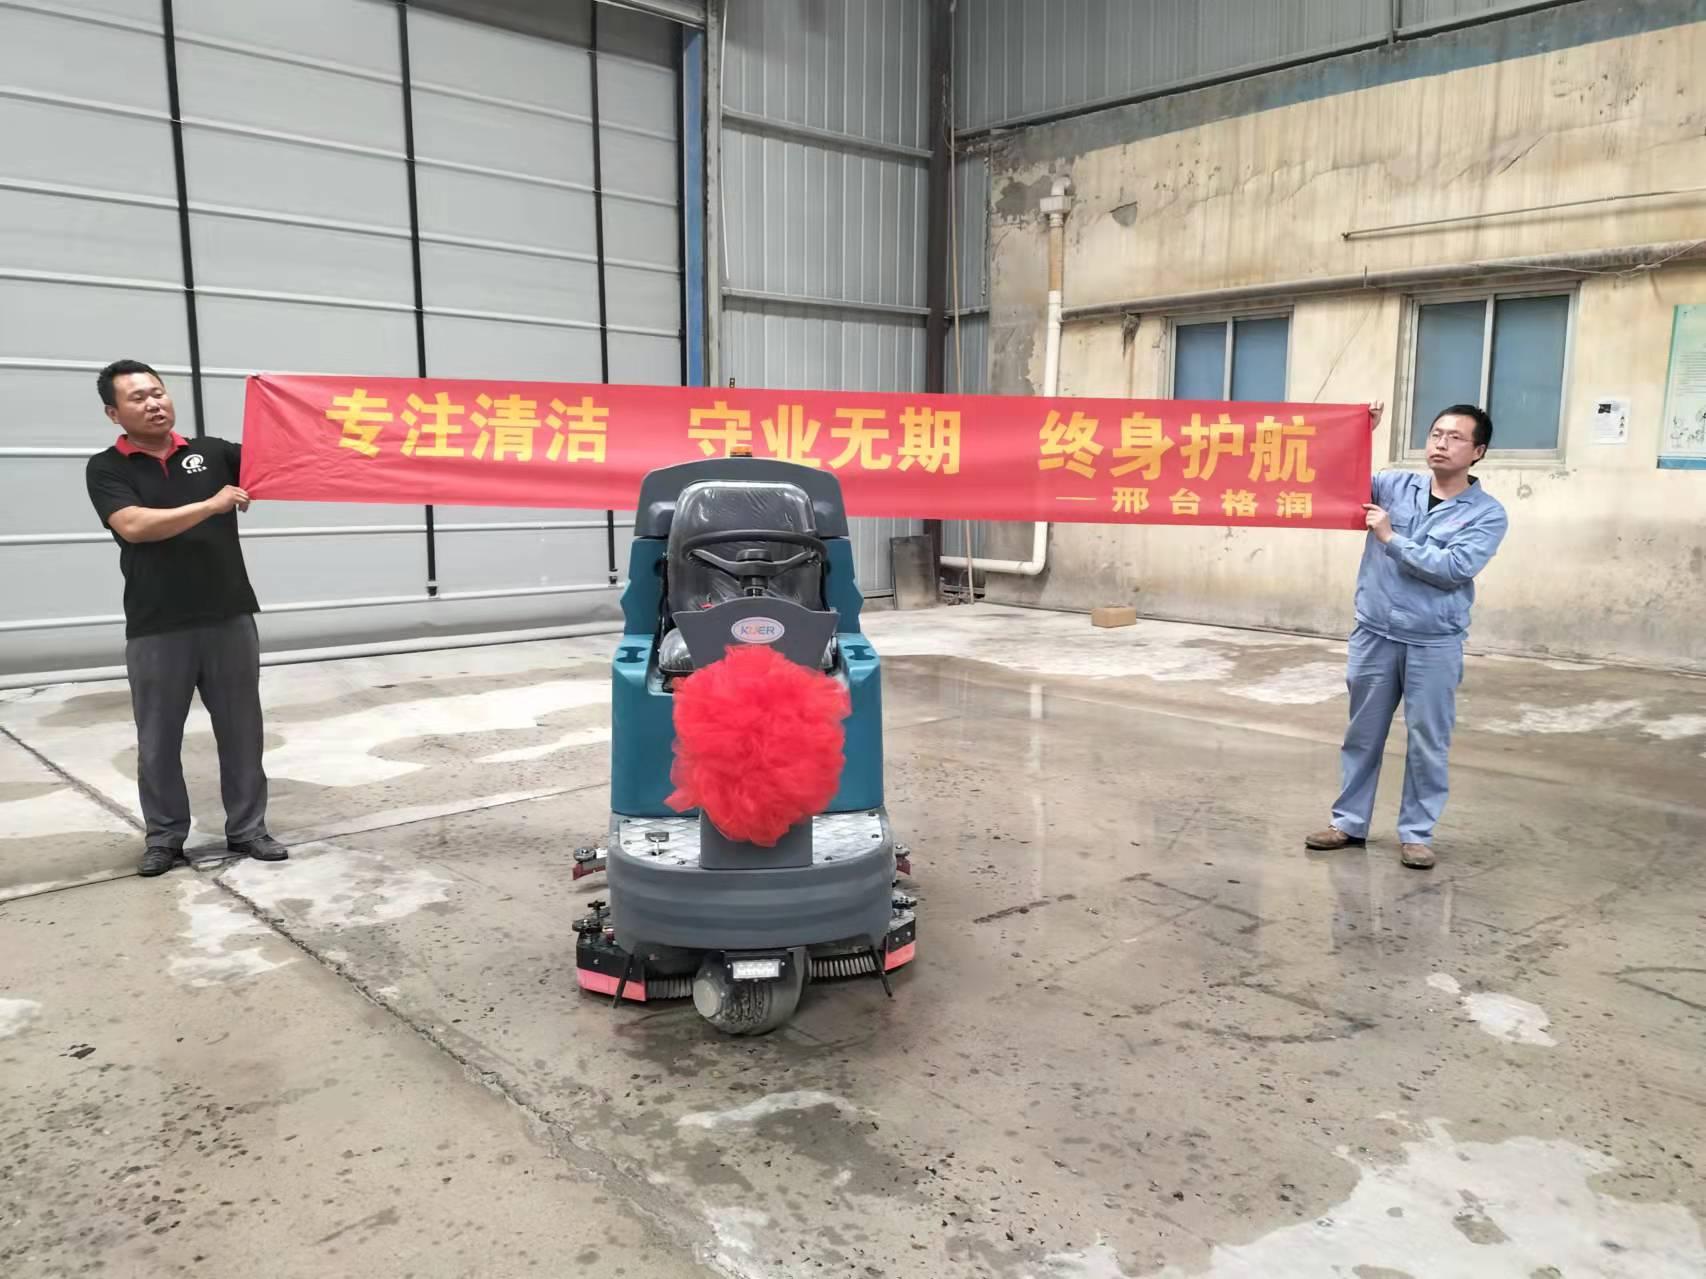 山西省太原市KR-XJ160S驾驶式洗地车